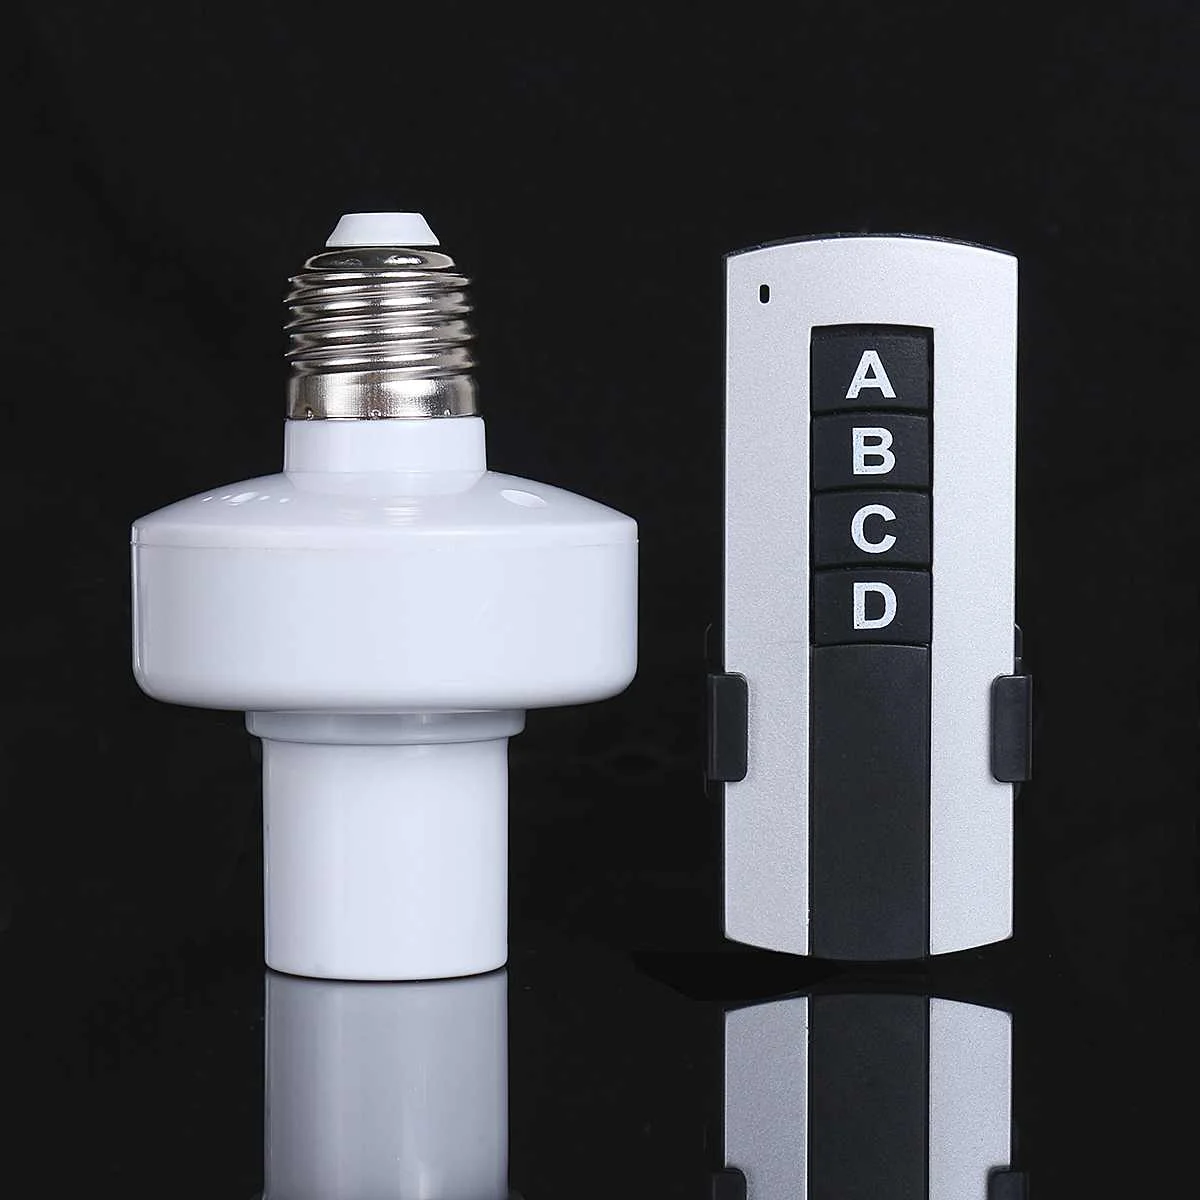 AC110V/180-240 V 3 Way E27 винт держатель беспроводной пульт дистанционного управления светильник лампа колпачок гнездо конвертер сплиттер адаптер